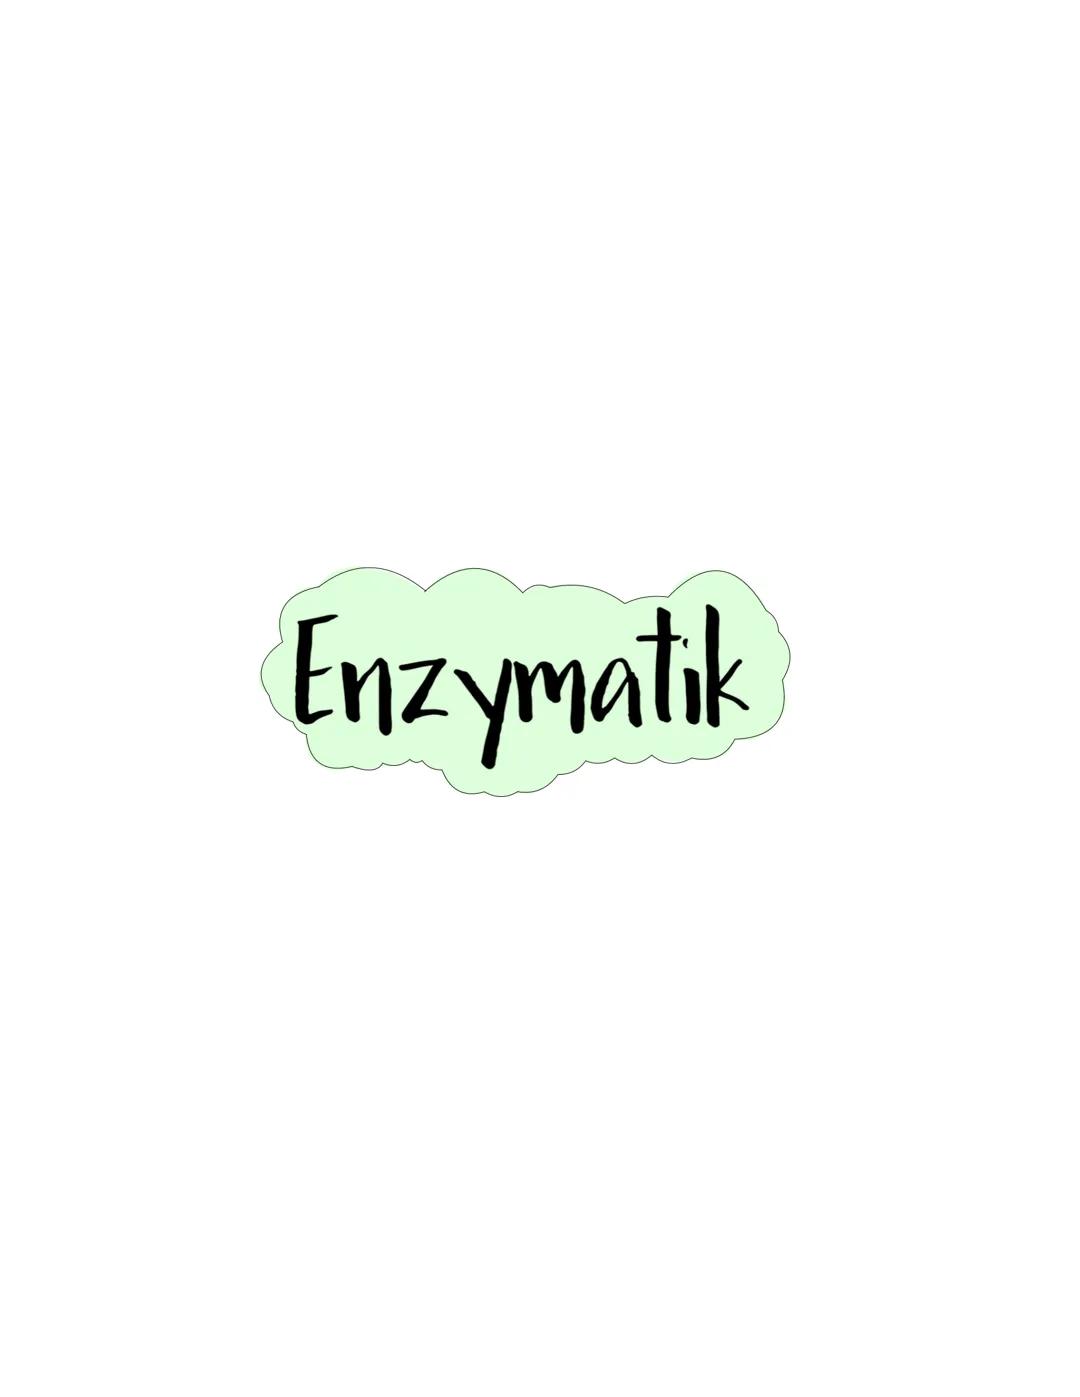 Enzymatik Enzyme:
-> Enzyme sind Biokatalysatoren, die die Aktivierungsenergie herabsetzen und so die Reaktionsgeschwindigkeit erhöhen
-> En